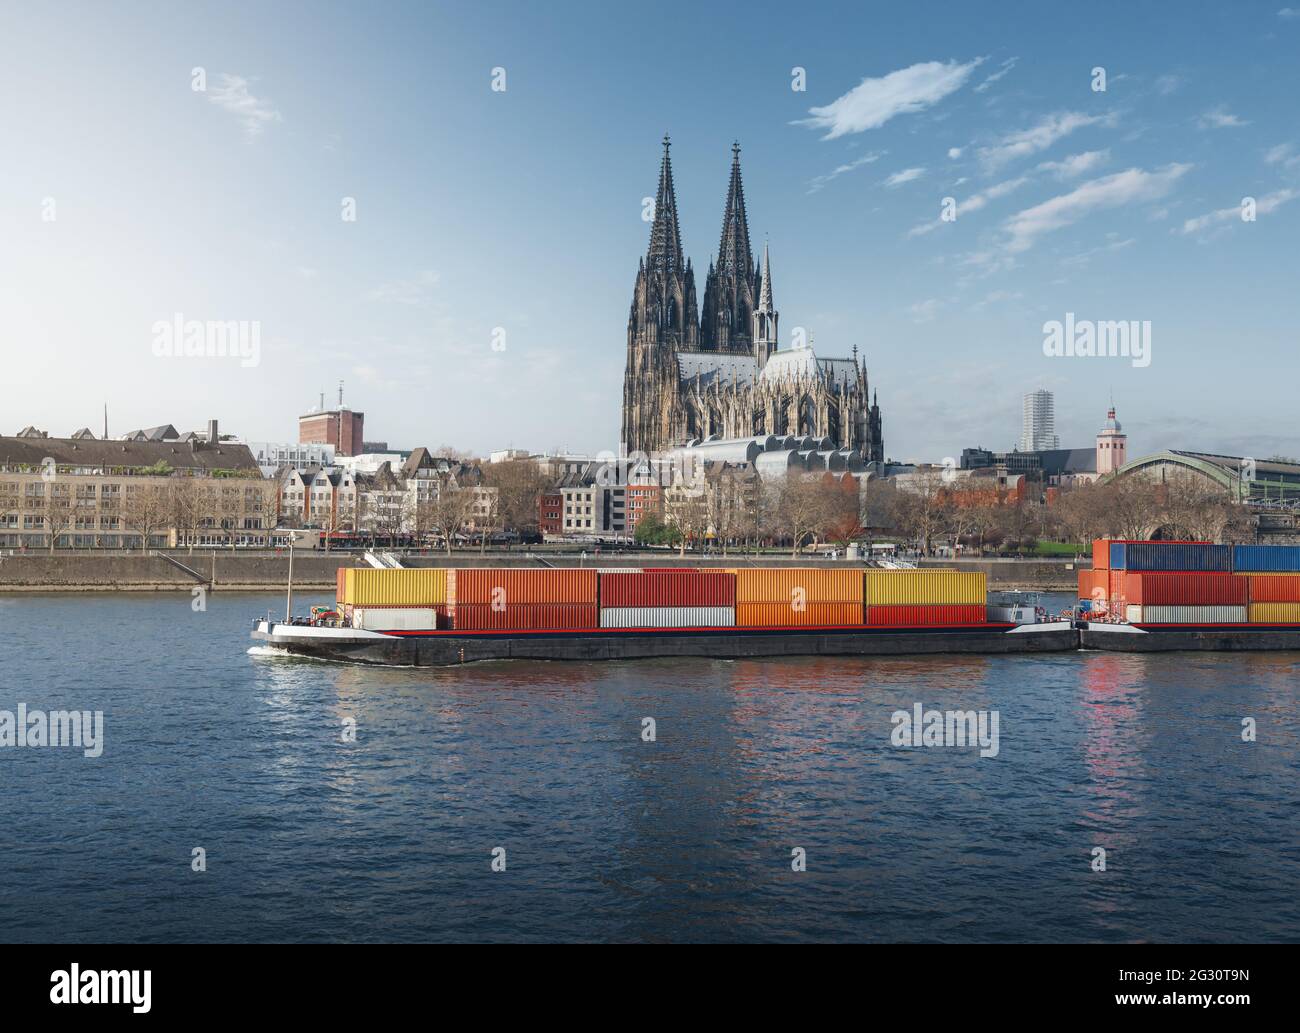 Frachtschiff, das Container auf dem Rhein transportiert, mit dem Kölner Dom im Hintergrund - Köln, Deutschland Stockfoto